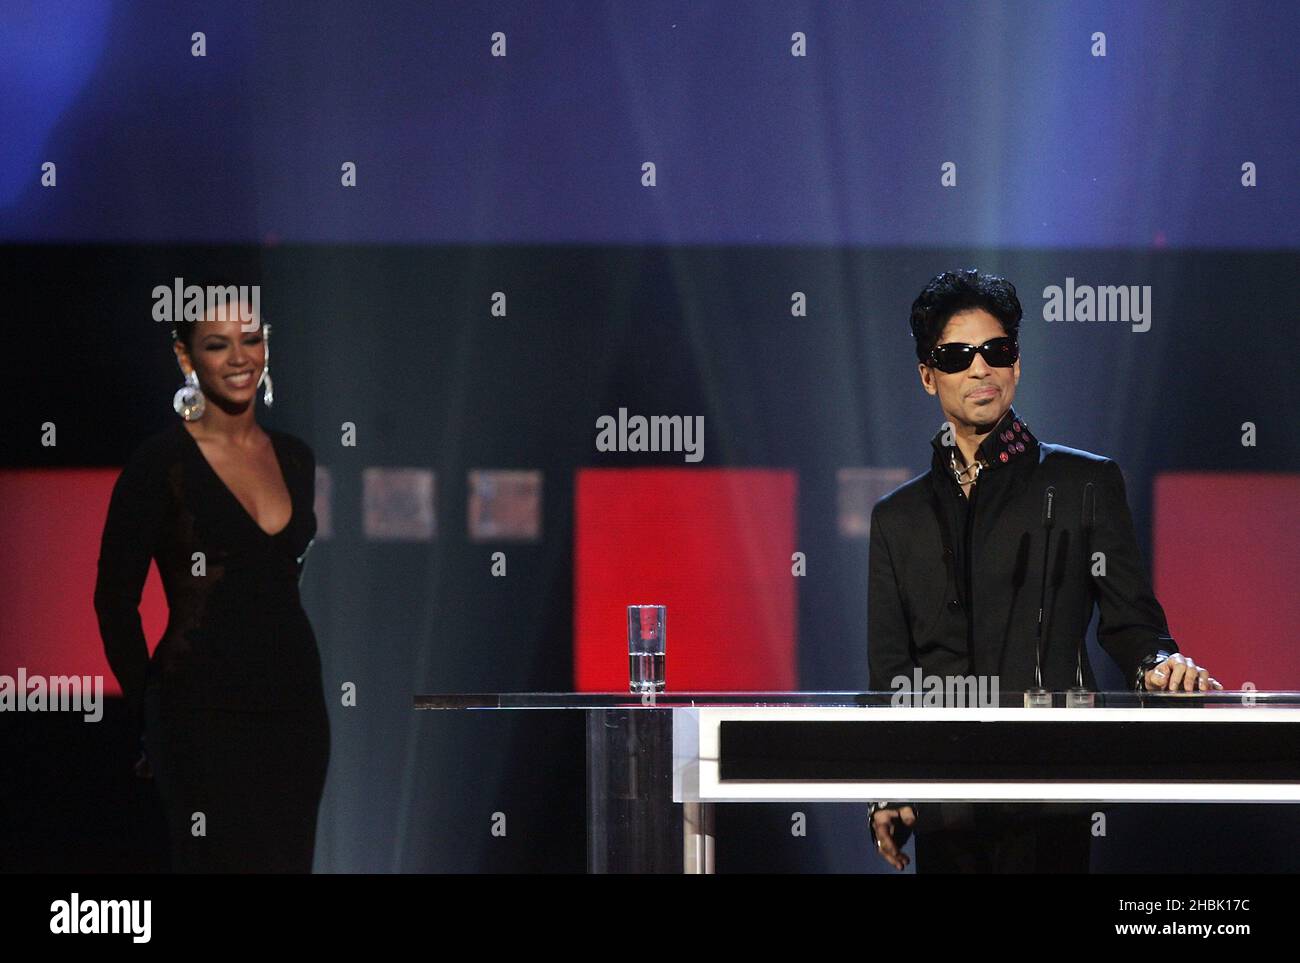 Prince viene presentato con il suo trofeo induttivo di Beyonce Knowles sul palco durante la UK Music Hall of Fame all'interno di Alexandra Palace a nord di Londra, il 14 novembre 2006. Una linea internazionale di leggende musicali e celebrità si è riunita per la cerimonia di orientamento della UK Music Hall of Fame del 2006, organizzata da Dermot o'Leary. Foto Stock